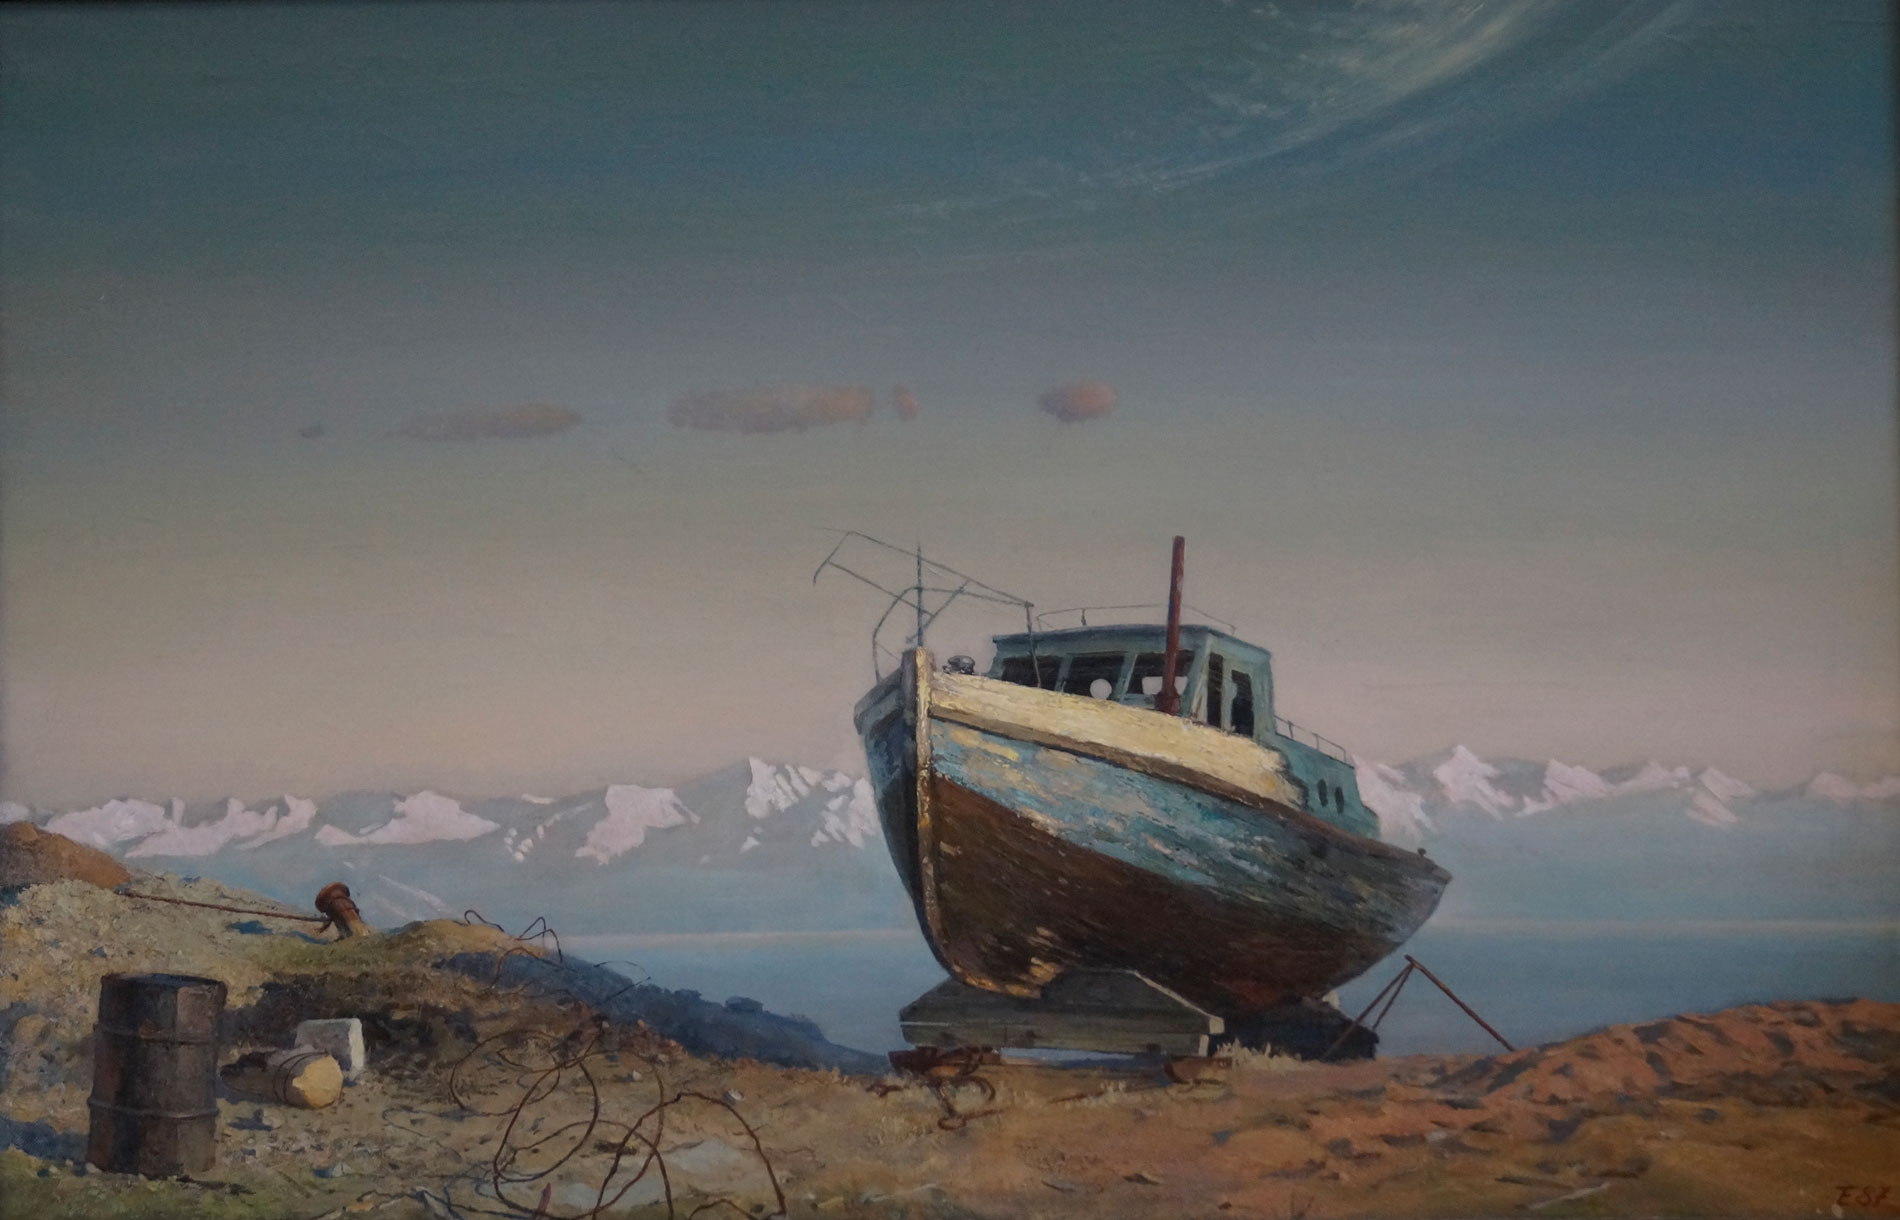 Baikal Shores - 1, Evgeny Tonkikh, Buy the painting Oil